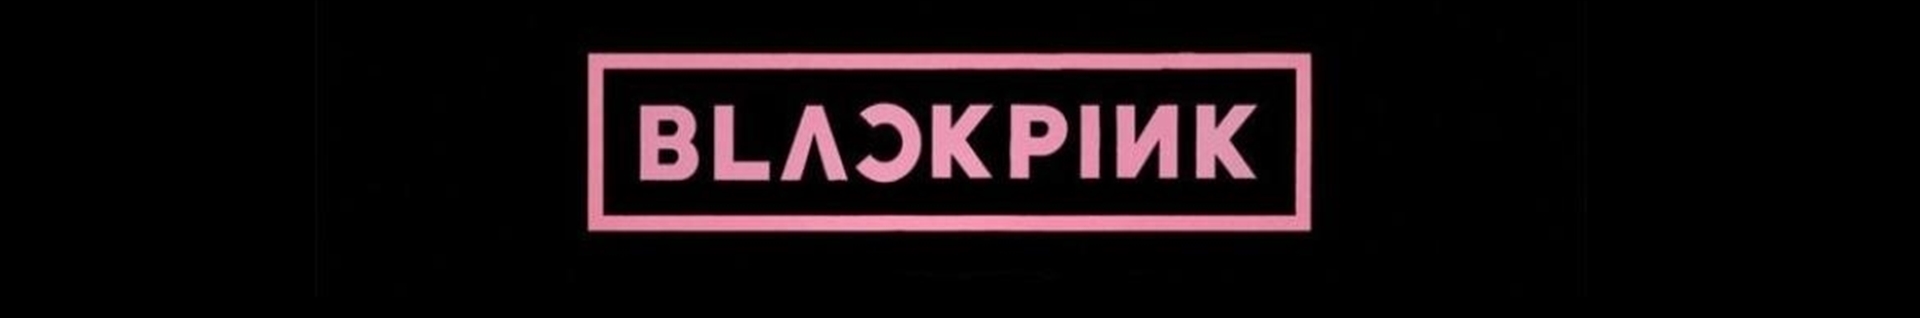 Blink/black pink lover